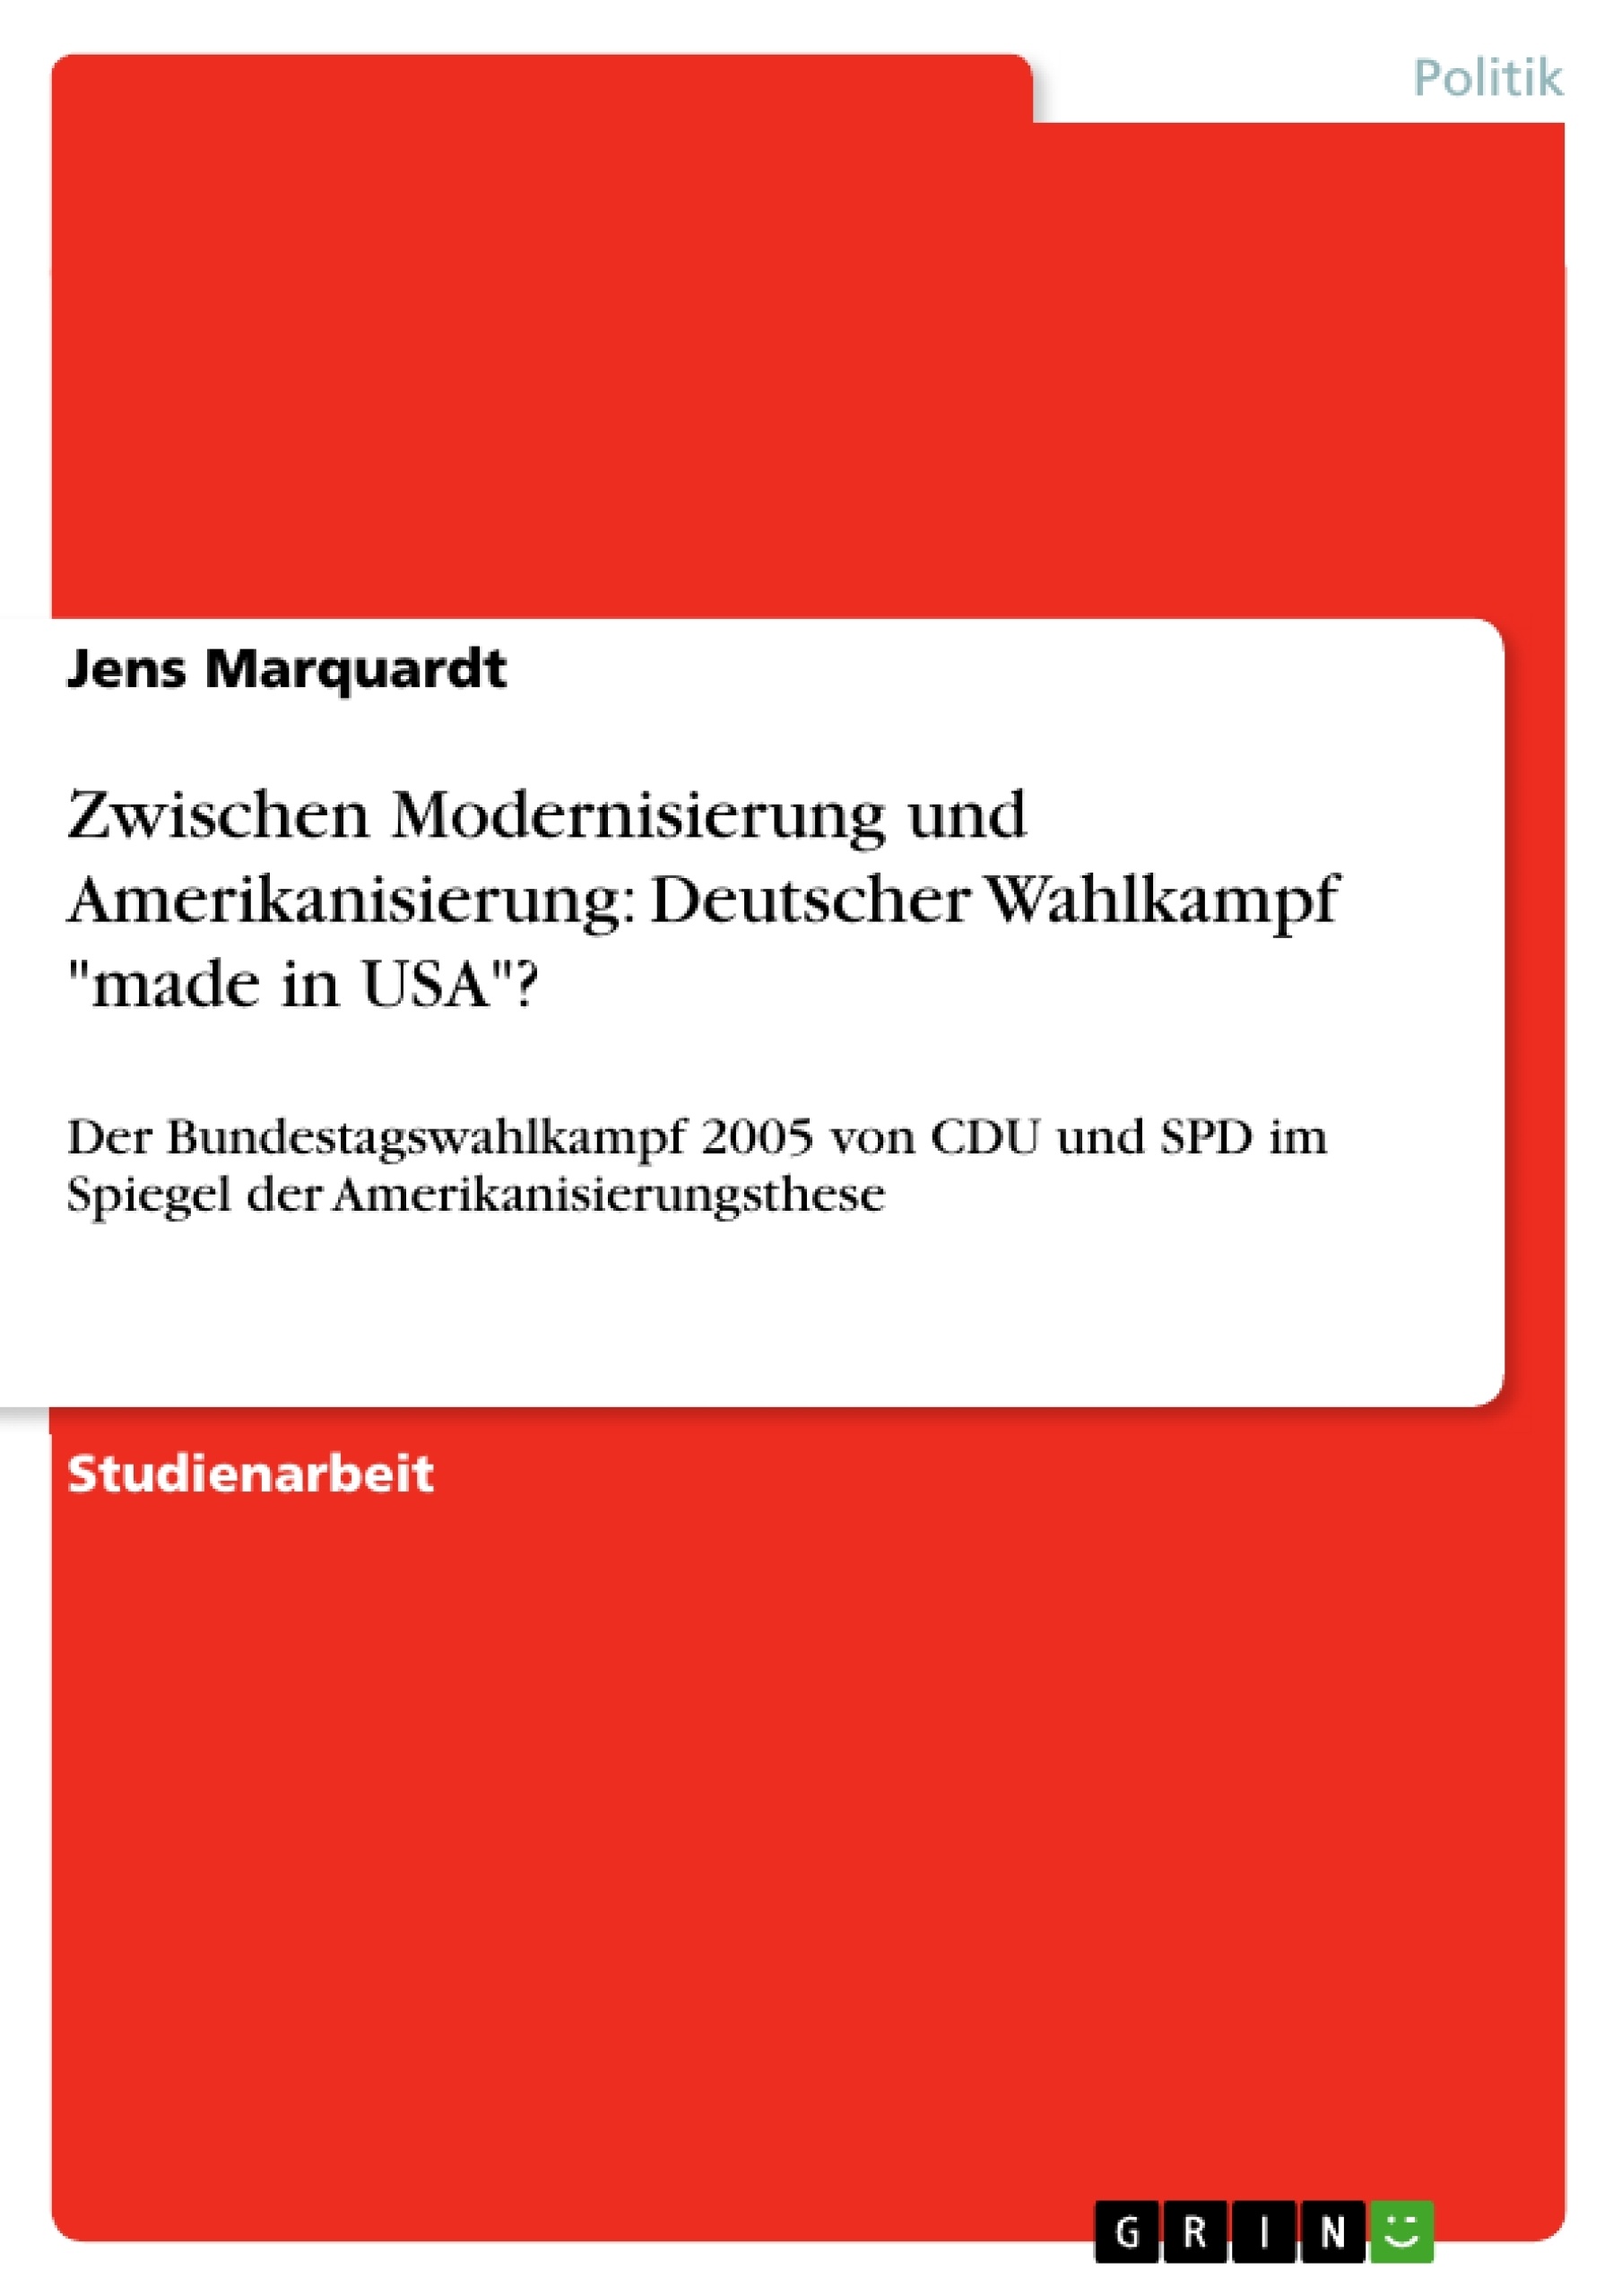 Título: Zwischen Modernisierung und Amerikanisierung: Deutscher Wahlkampf "made in USA"?